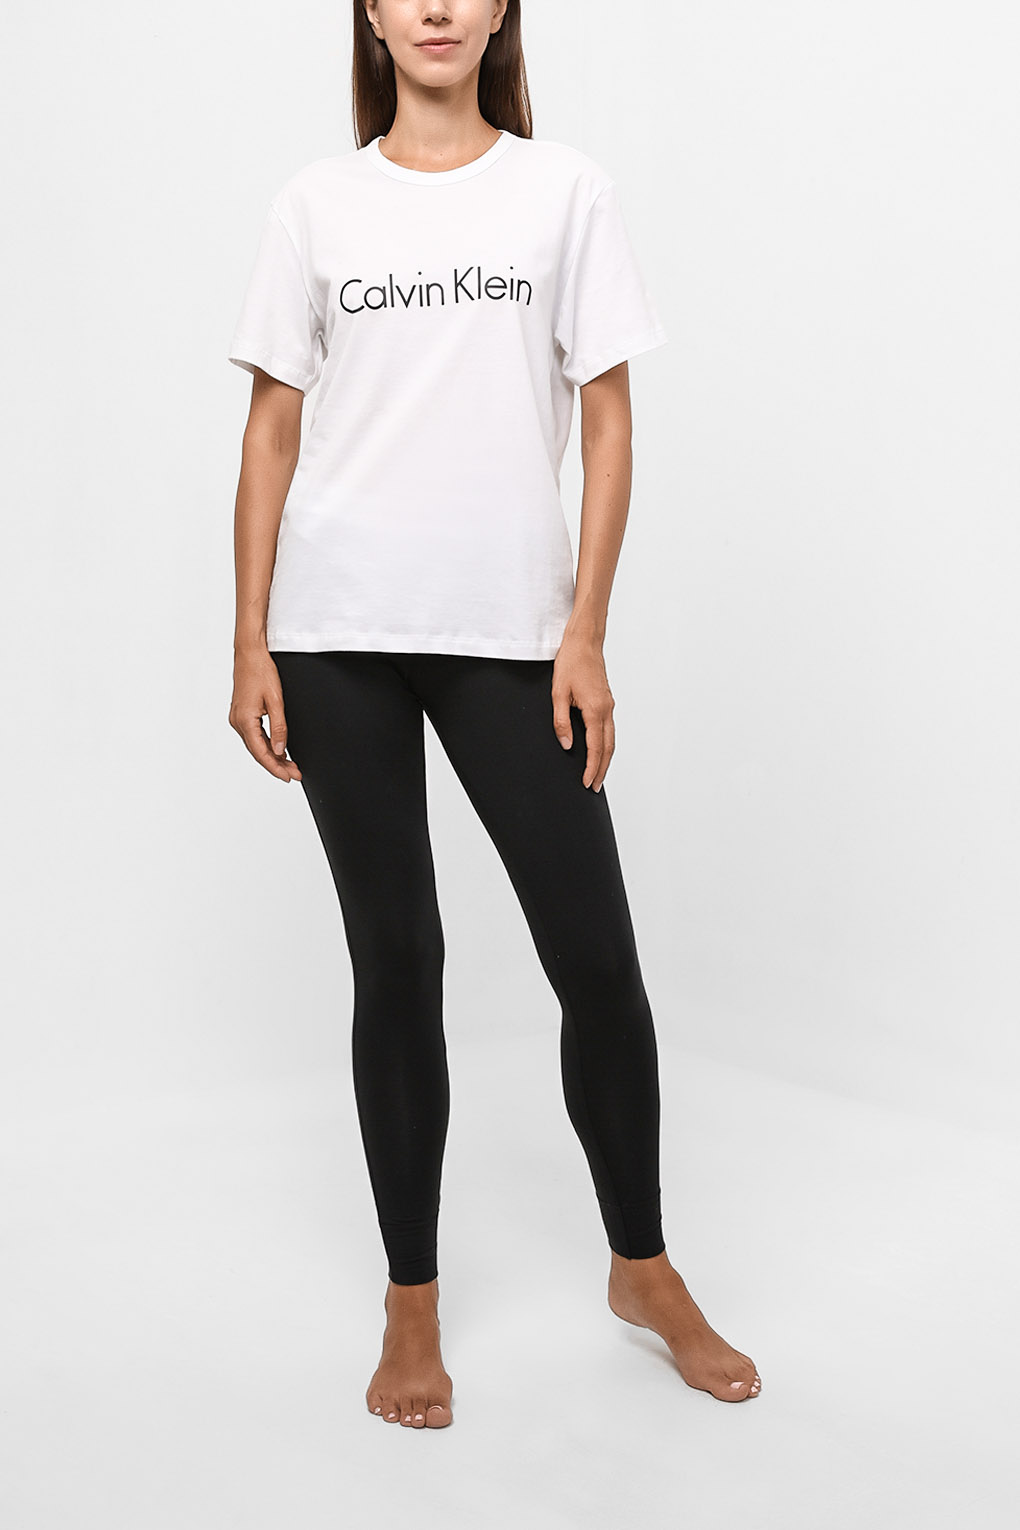 Леггинсы домашние женские Calvin Klein 0000D1632E черные M